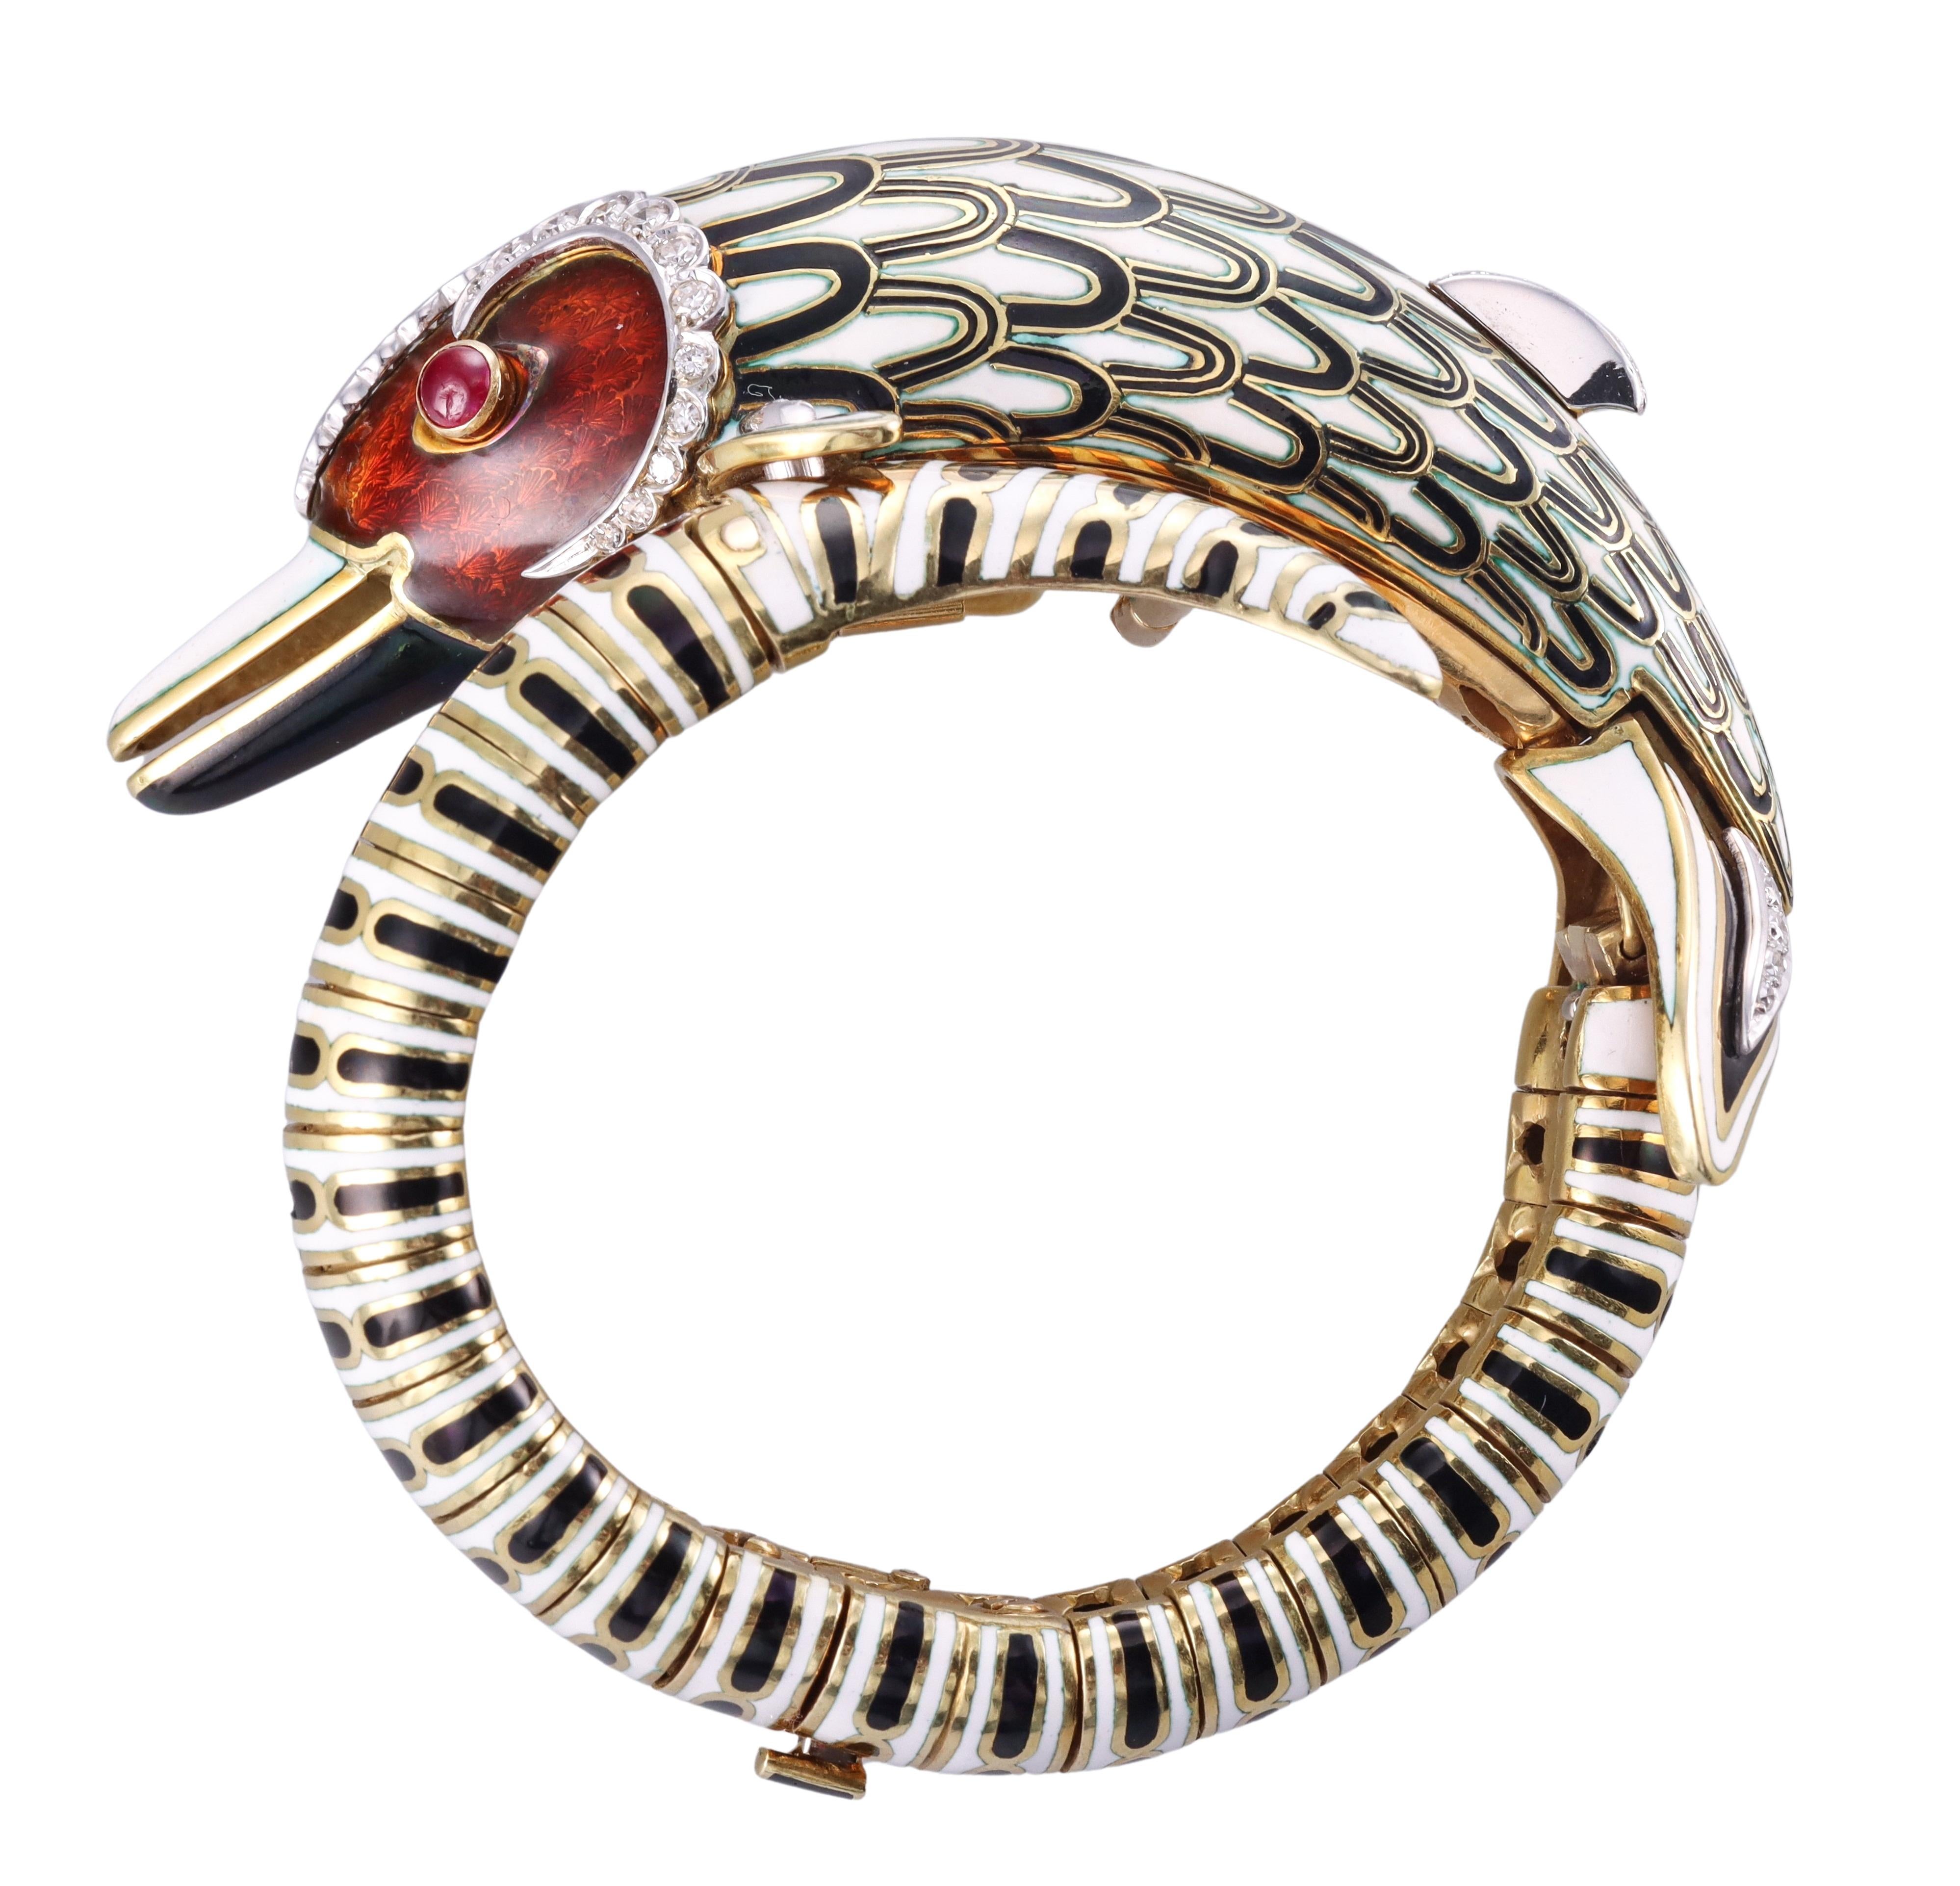 Impressionnant bracelet en or jaune 18k de Frascarolo, serti d'émail, d'yeux en rubis et d'environ 1,00ctw de diamants H/VS. Le bracelet représente un dauphin mythique, décoré d'un émail complexe. Le bracelet convient à un poignet de petite taille -